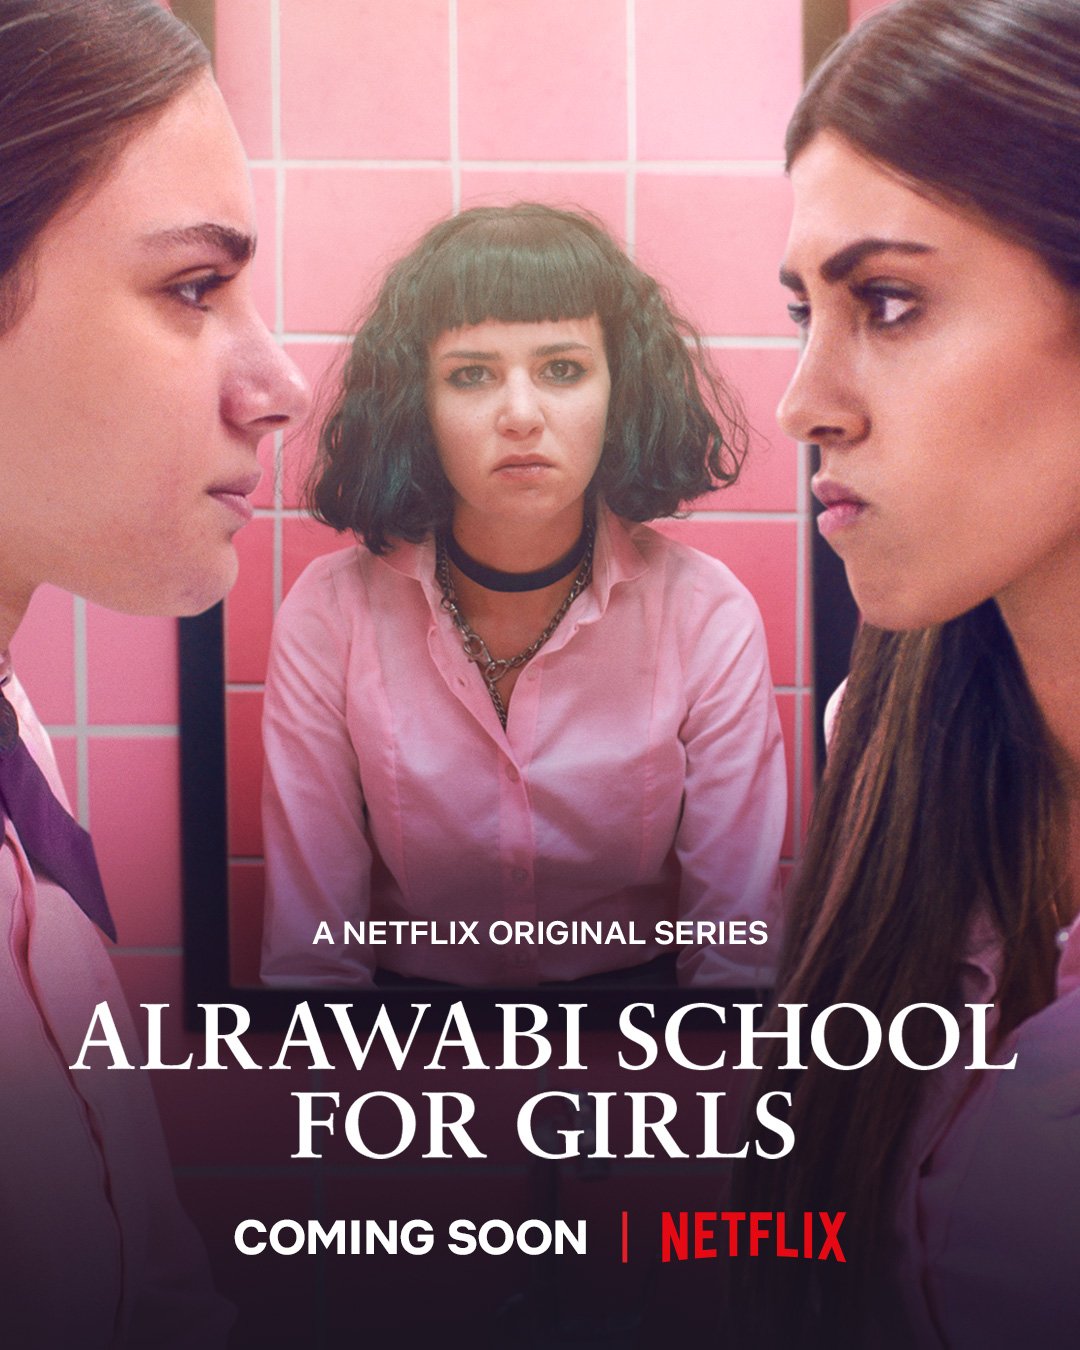 alrawabi-school-for-girls-2021-เด็กสาวหลังรั้วหญิงล้วน-ตอนที่-1-6-ซับไทย - บ้านซีรี่ย์